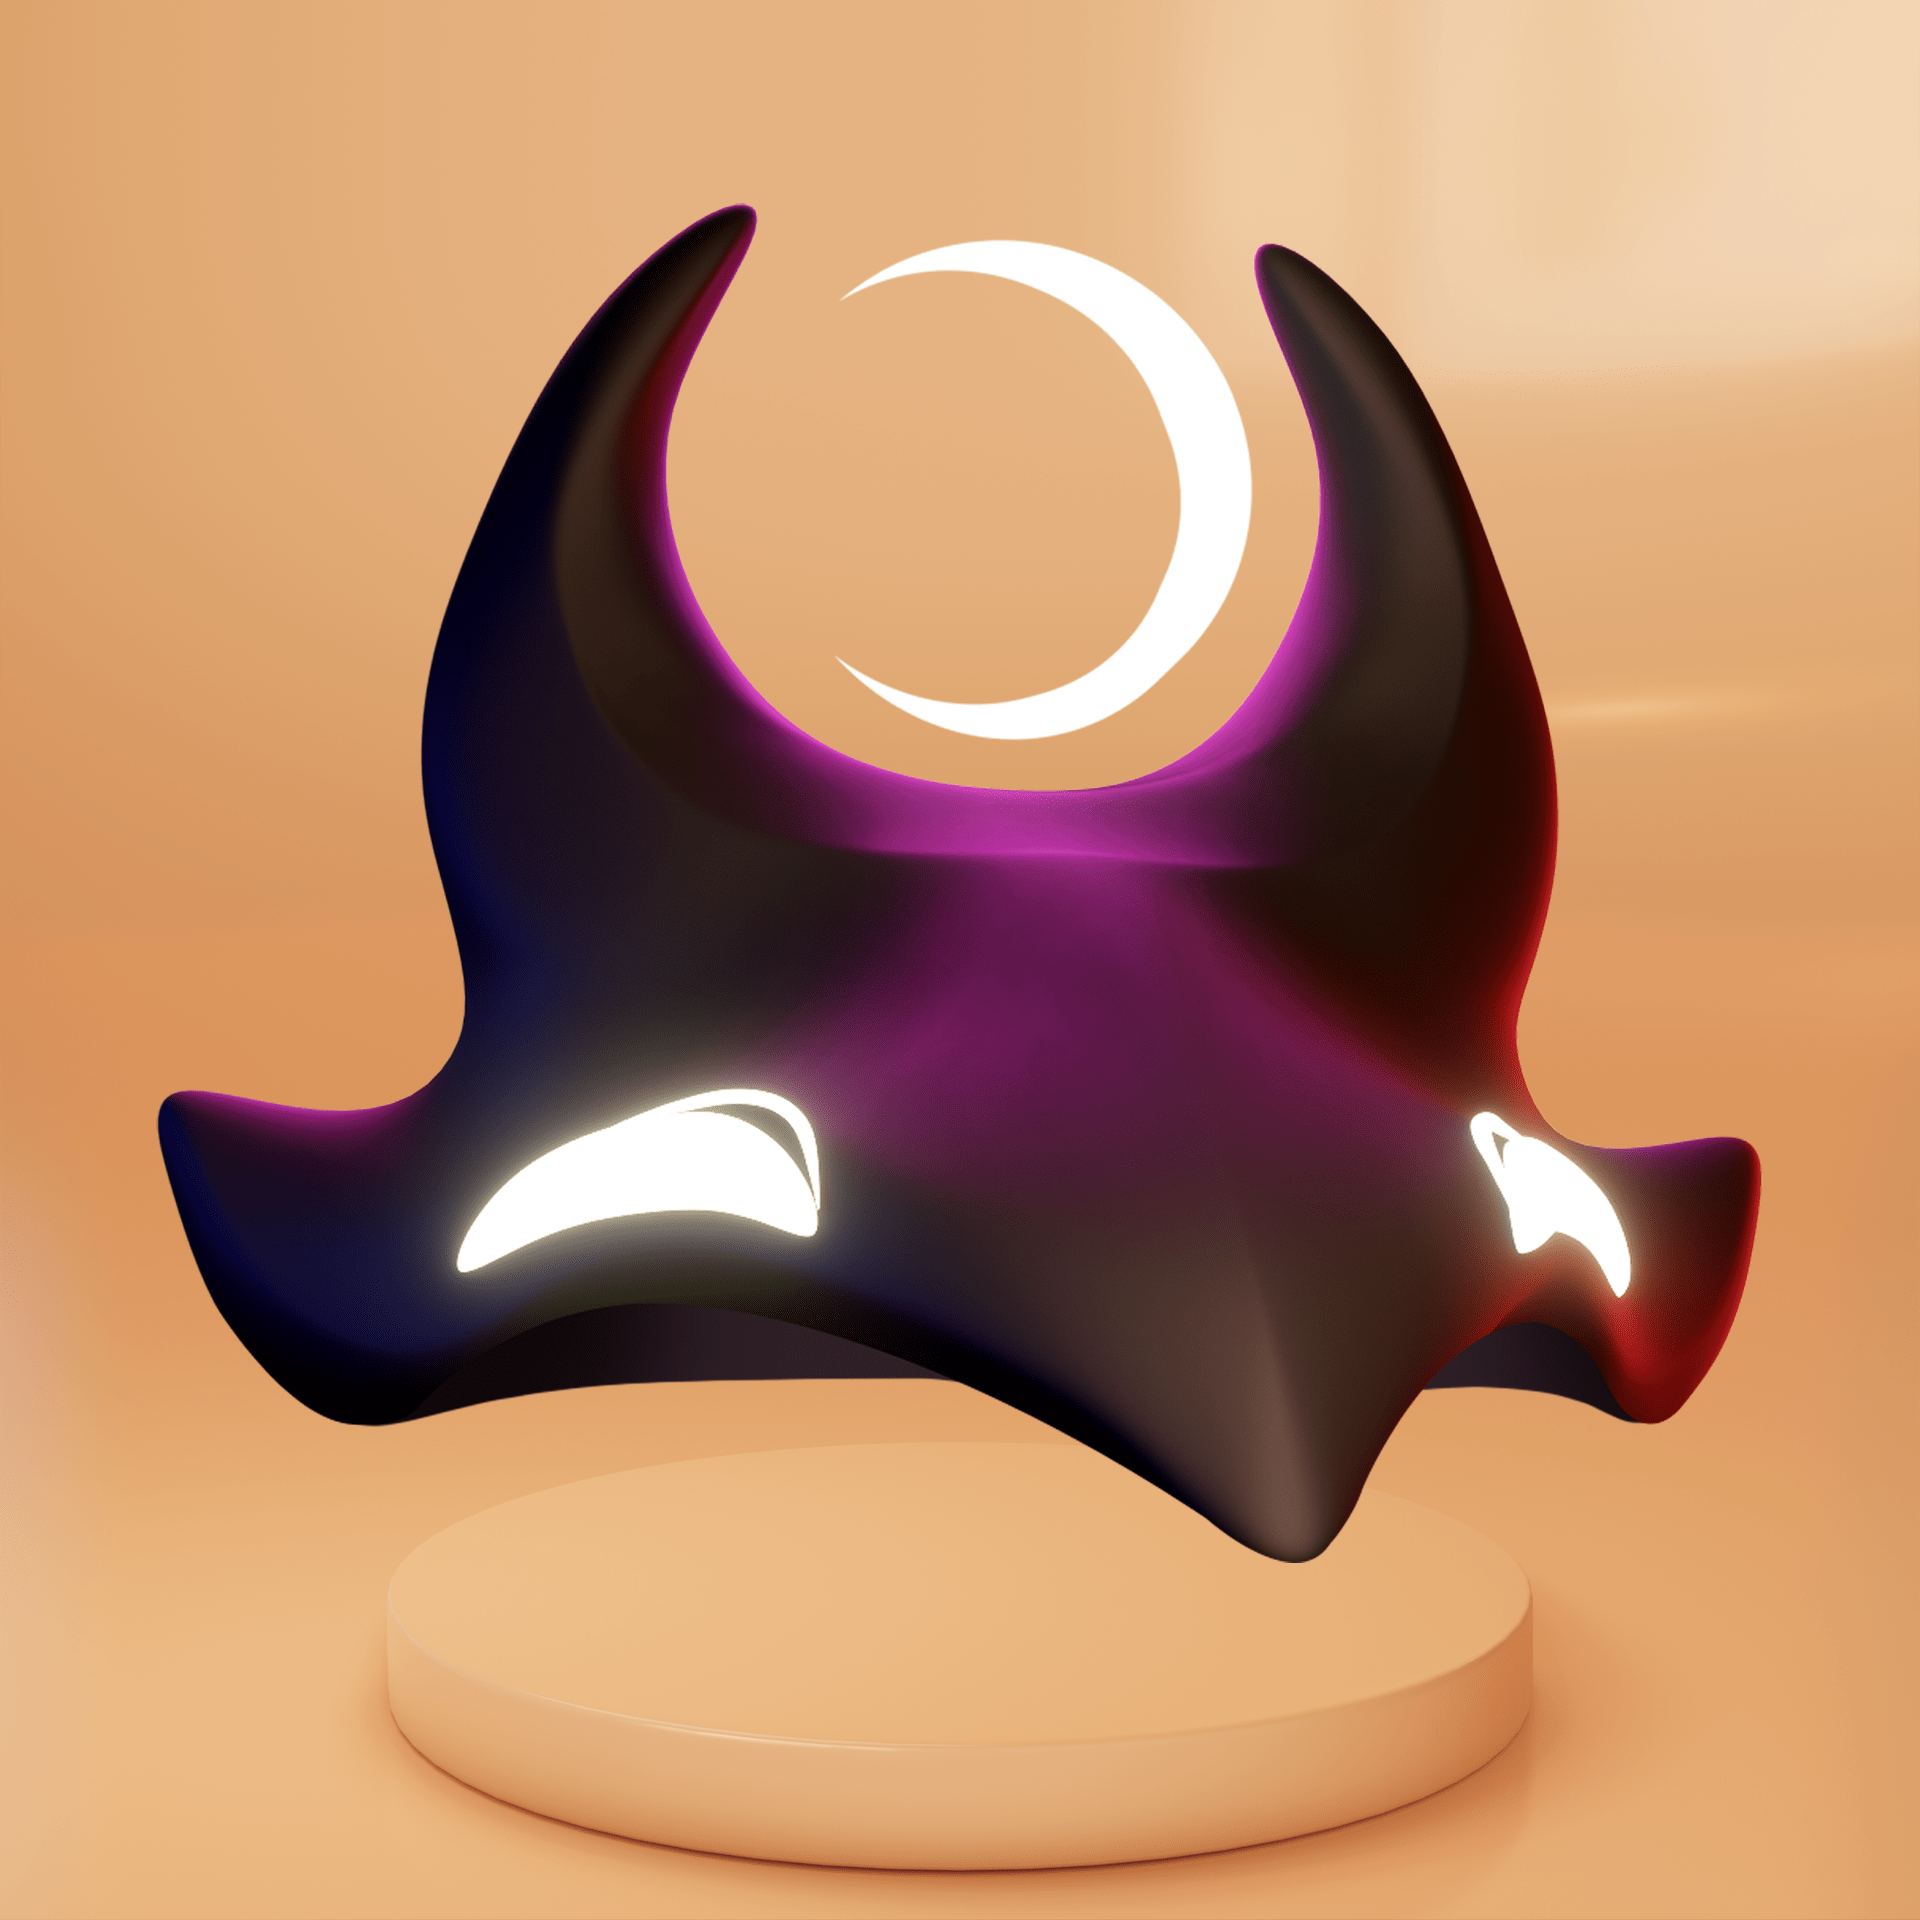 Solful x 3moji Moonlight Helmet